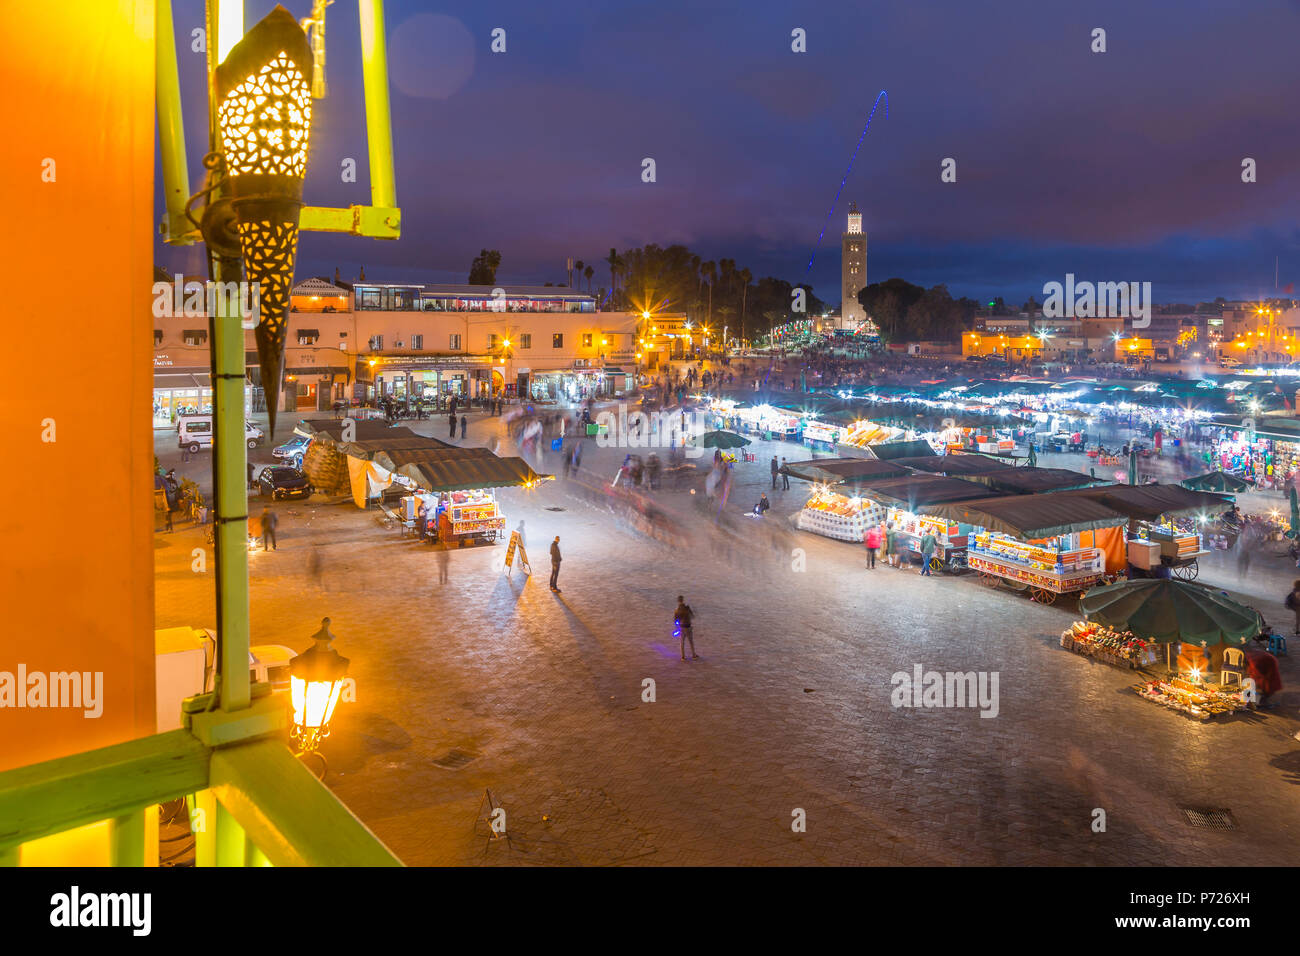 Vista della piazza Jemaa el Fna (Djemaa El Fnaa) Square, l'UNESCO e la Moschea di Koutoubia di notte, Marrakesh (Marrakech), Marocco, Africa Settentrionale, Africa Foto Stock